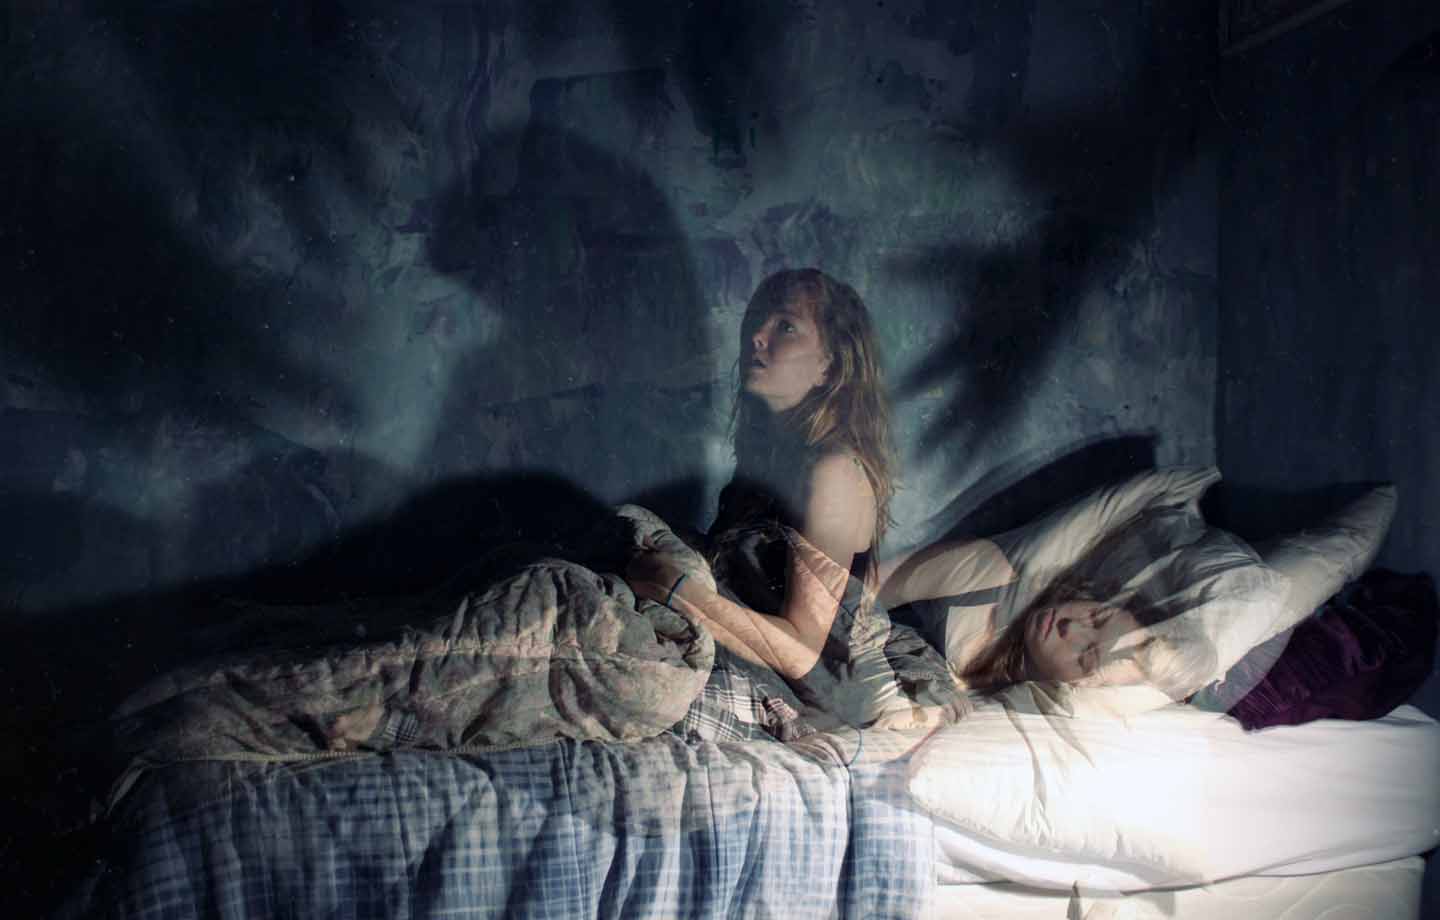 Novo estudo associa falta de sono a crenças paranormais